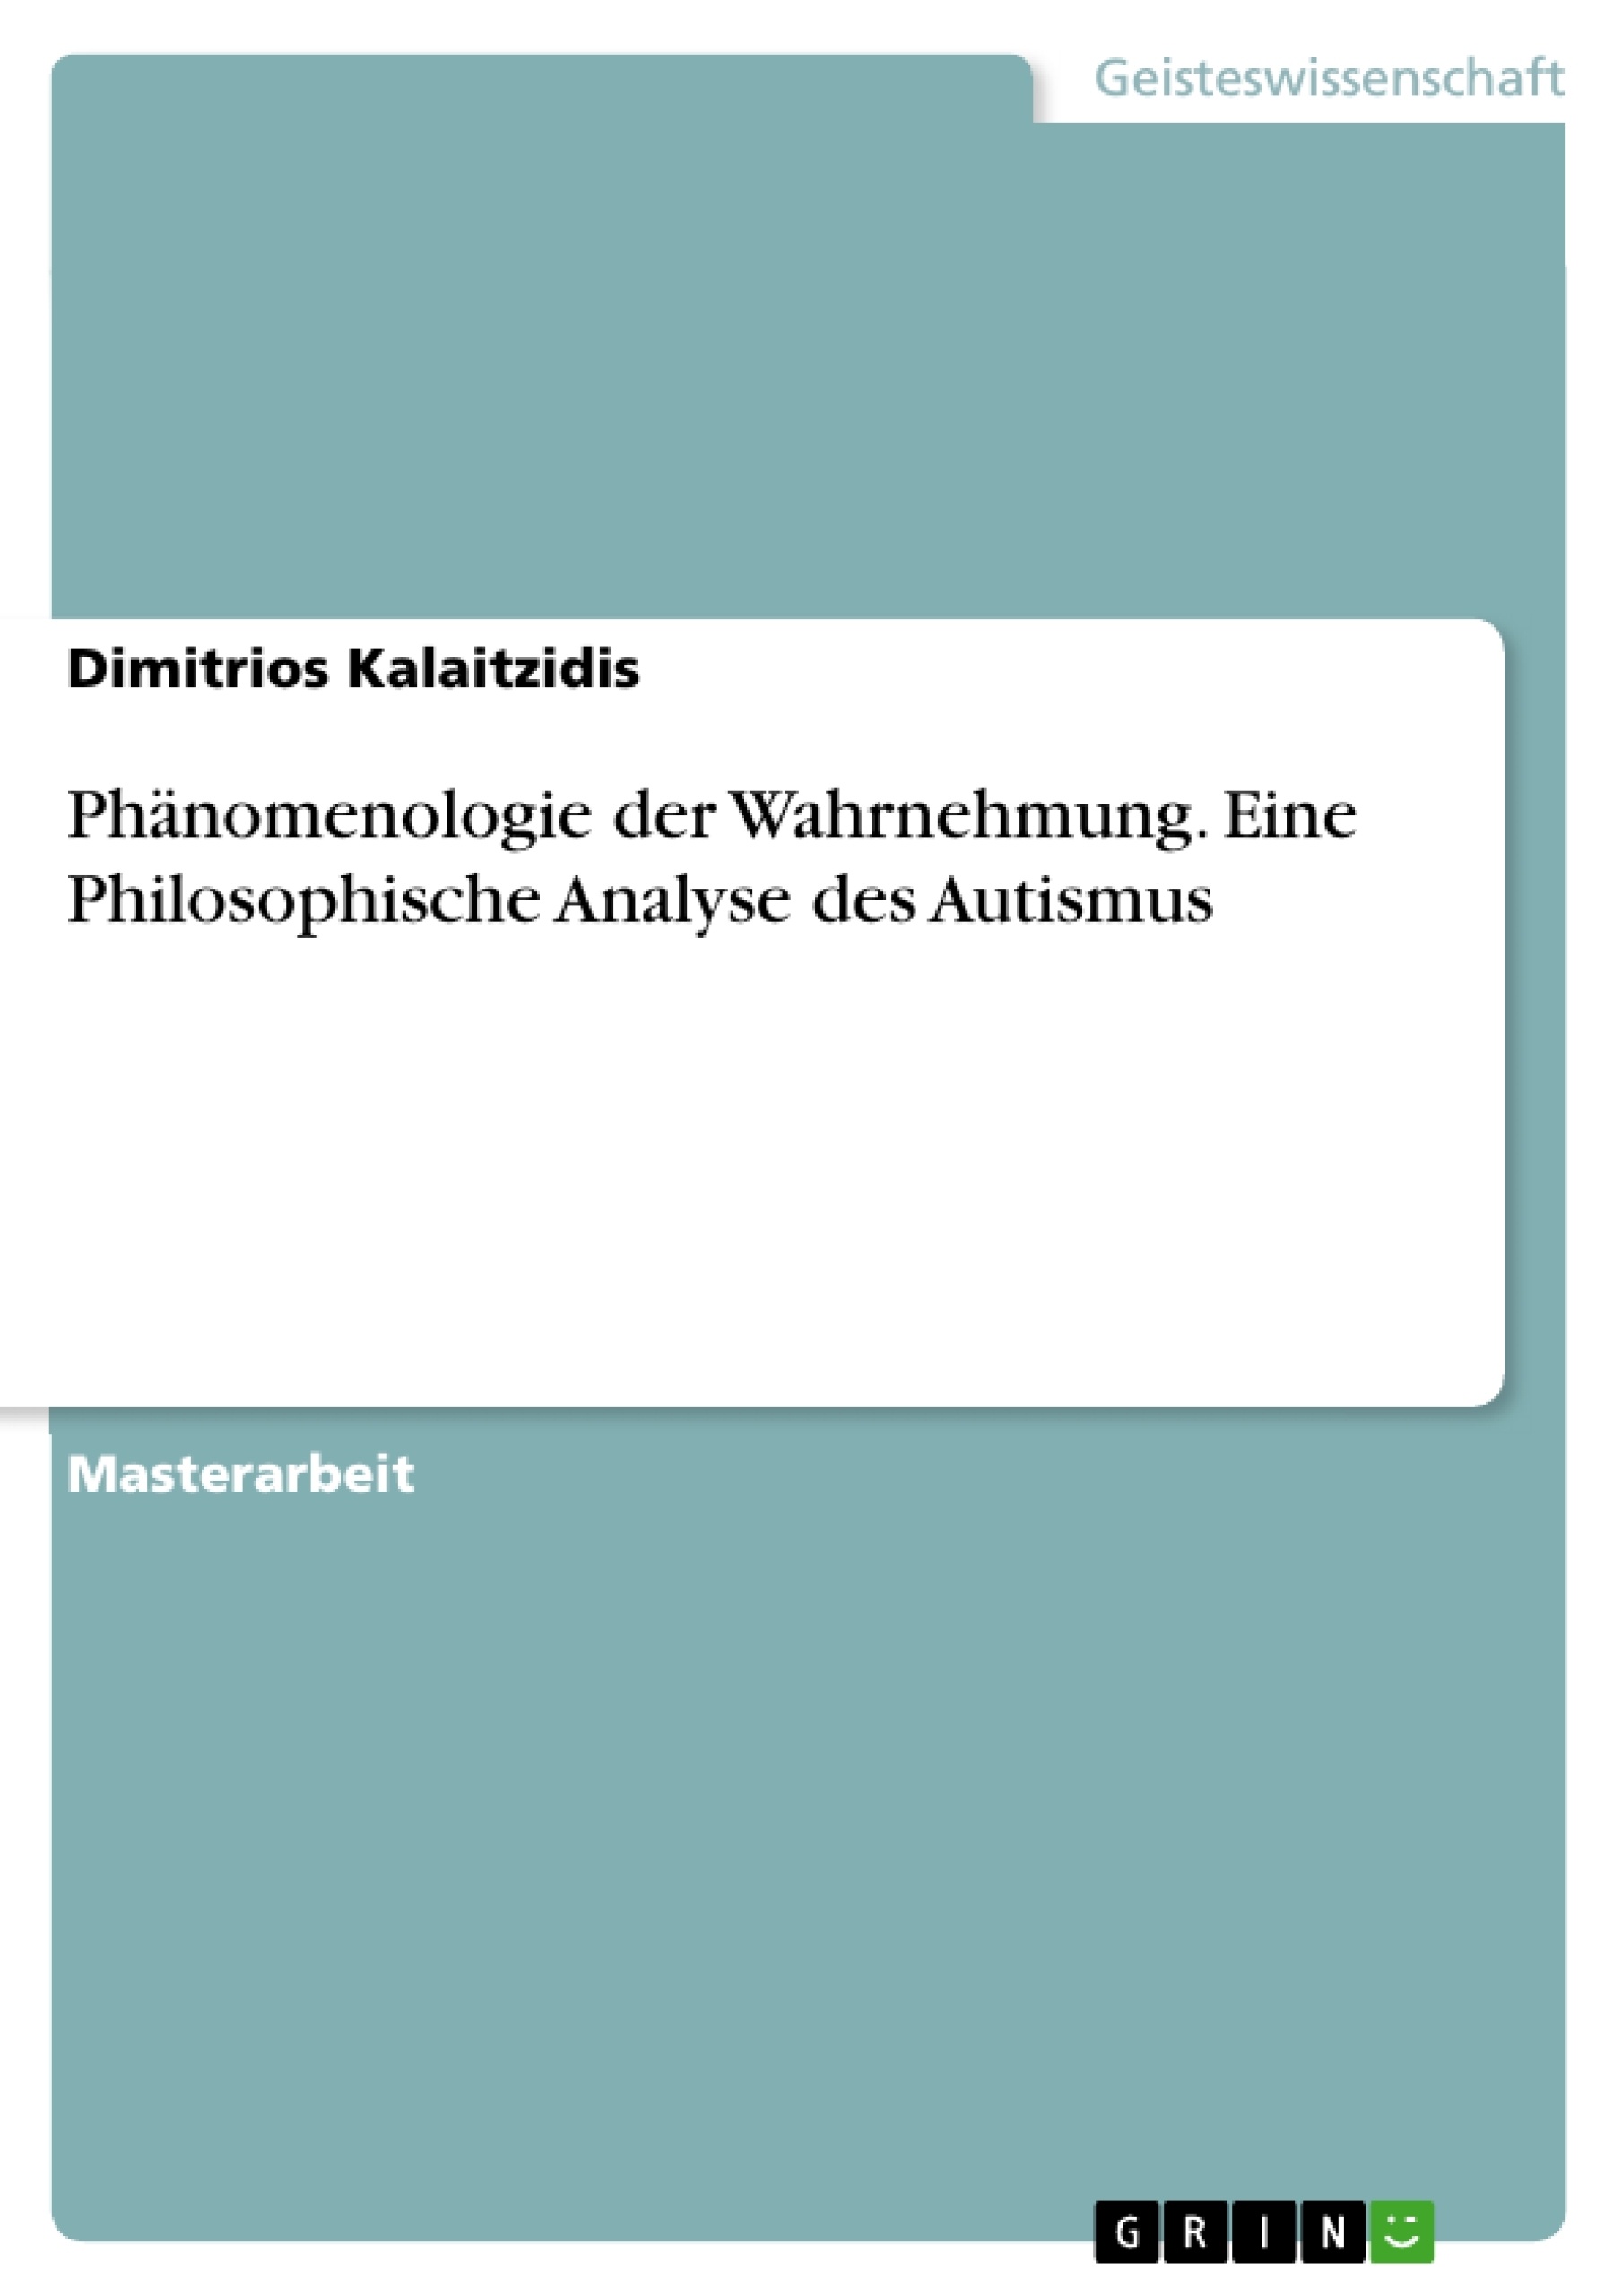 Title: Phänomenologie der Wahrnehmung. Eine Philosophische Analyse des Autismus